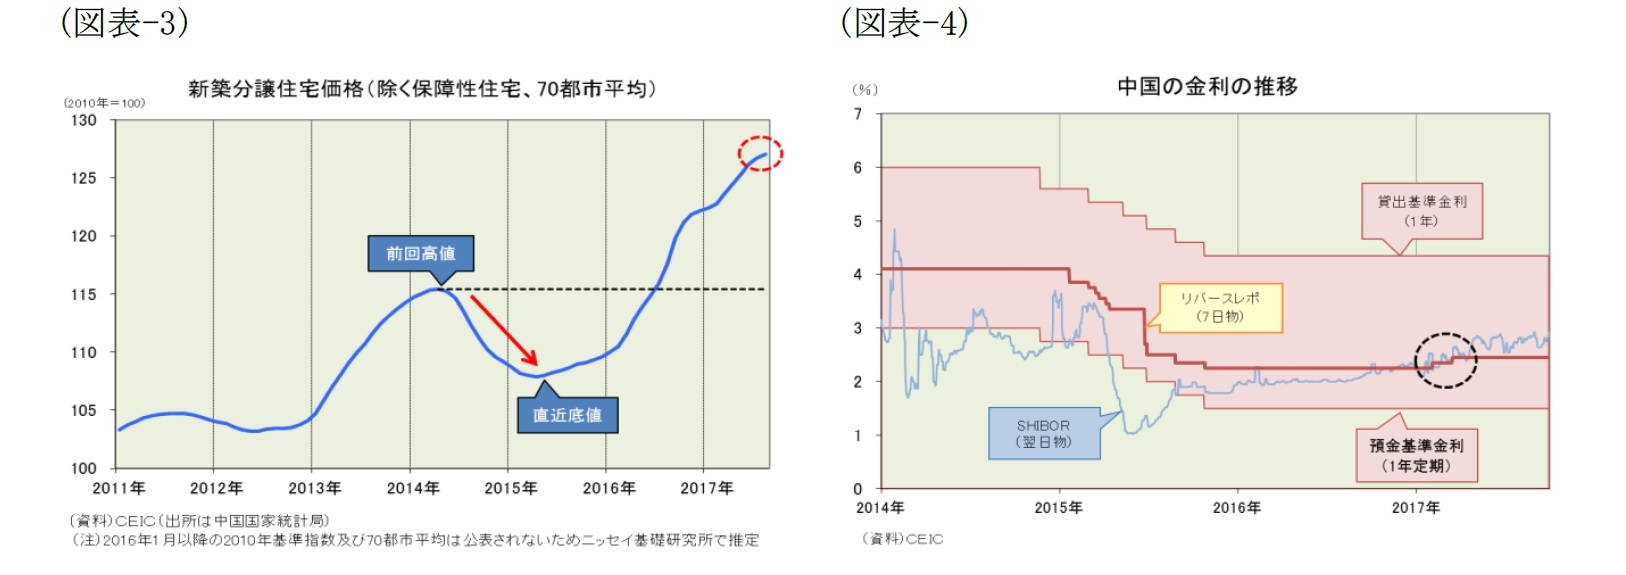 (図表-3)新築分譲住宅価格(除く保障性住宅、70都市平均)/(図表-4)中国の金利の推移